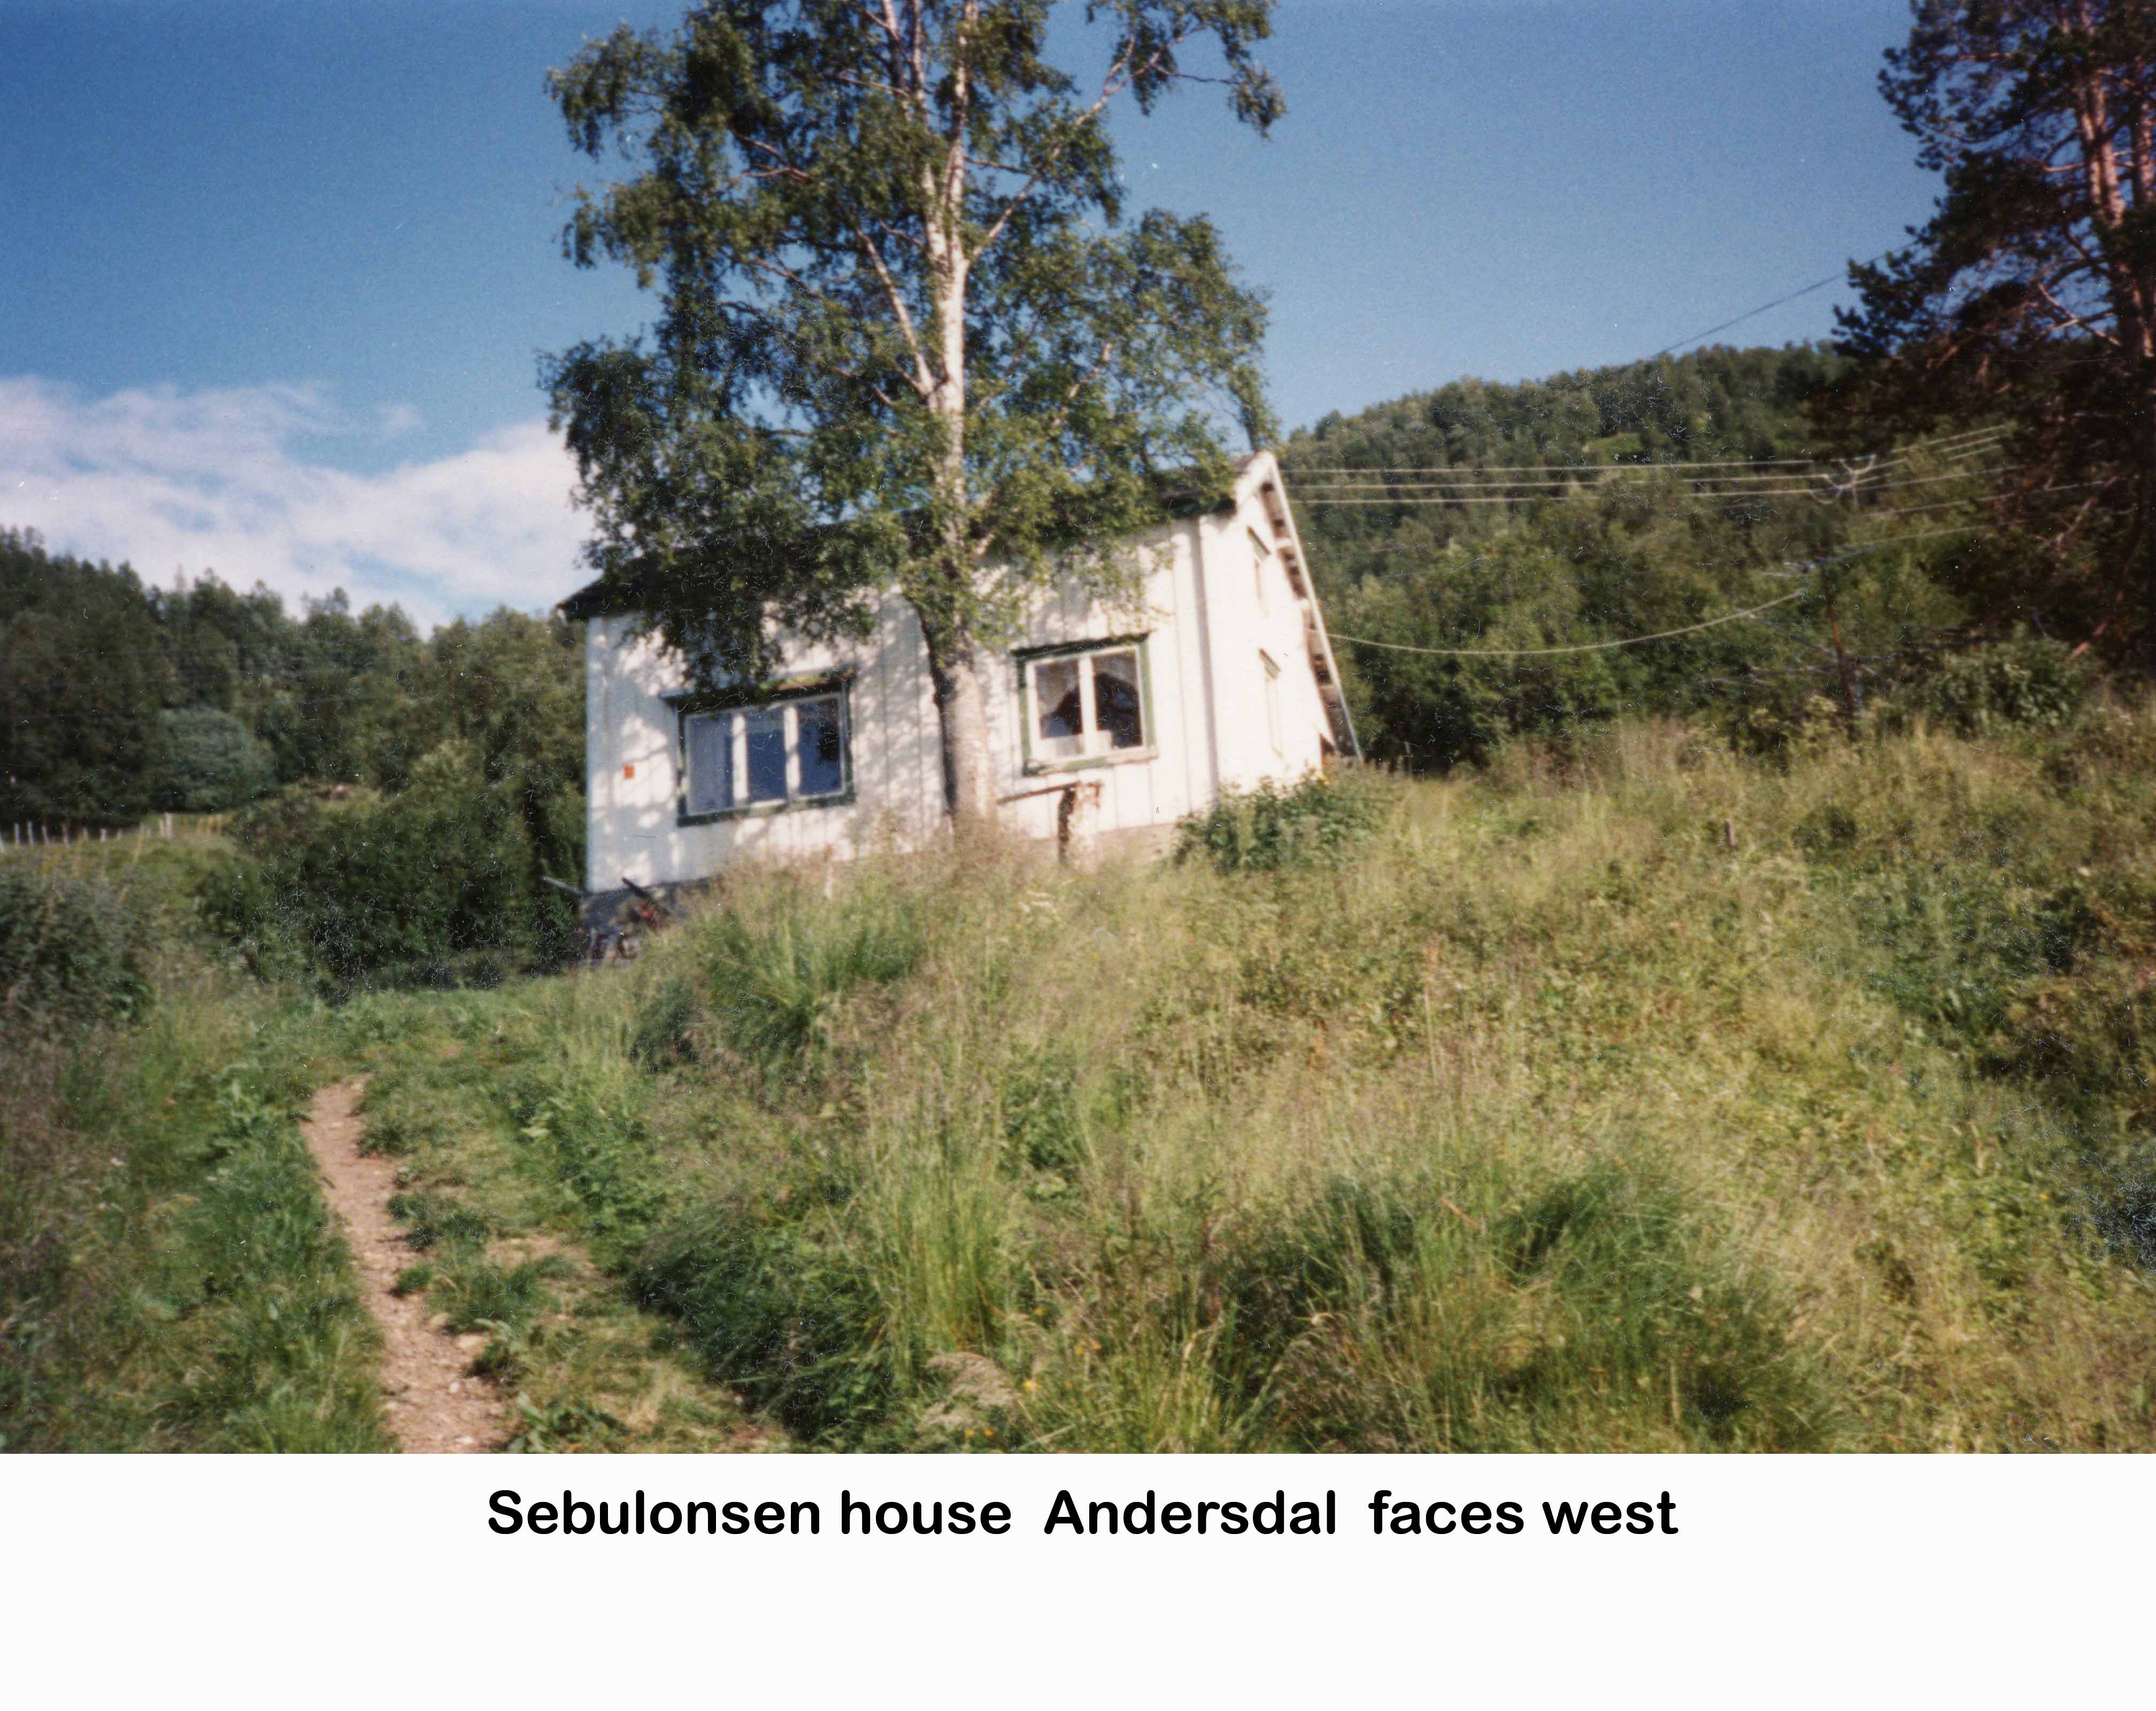  Sebulonsen house 1989 